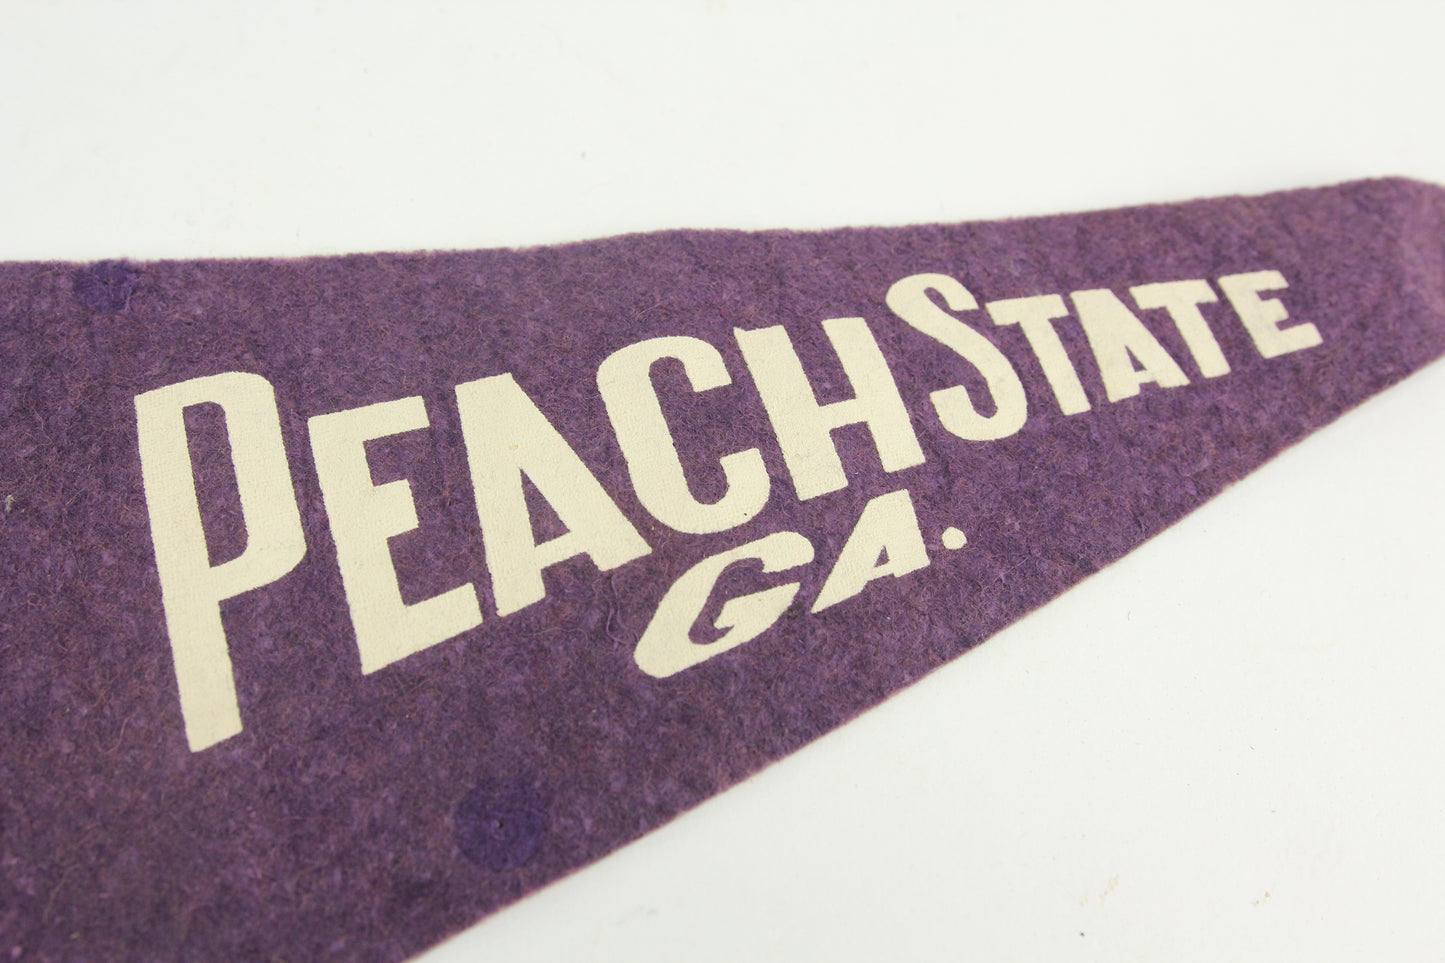 Peach State Georgia Purple Souvenir Pennant - 17"